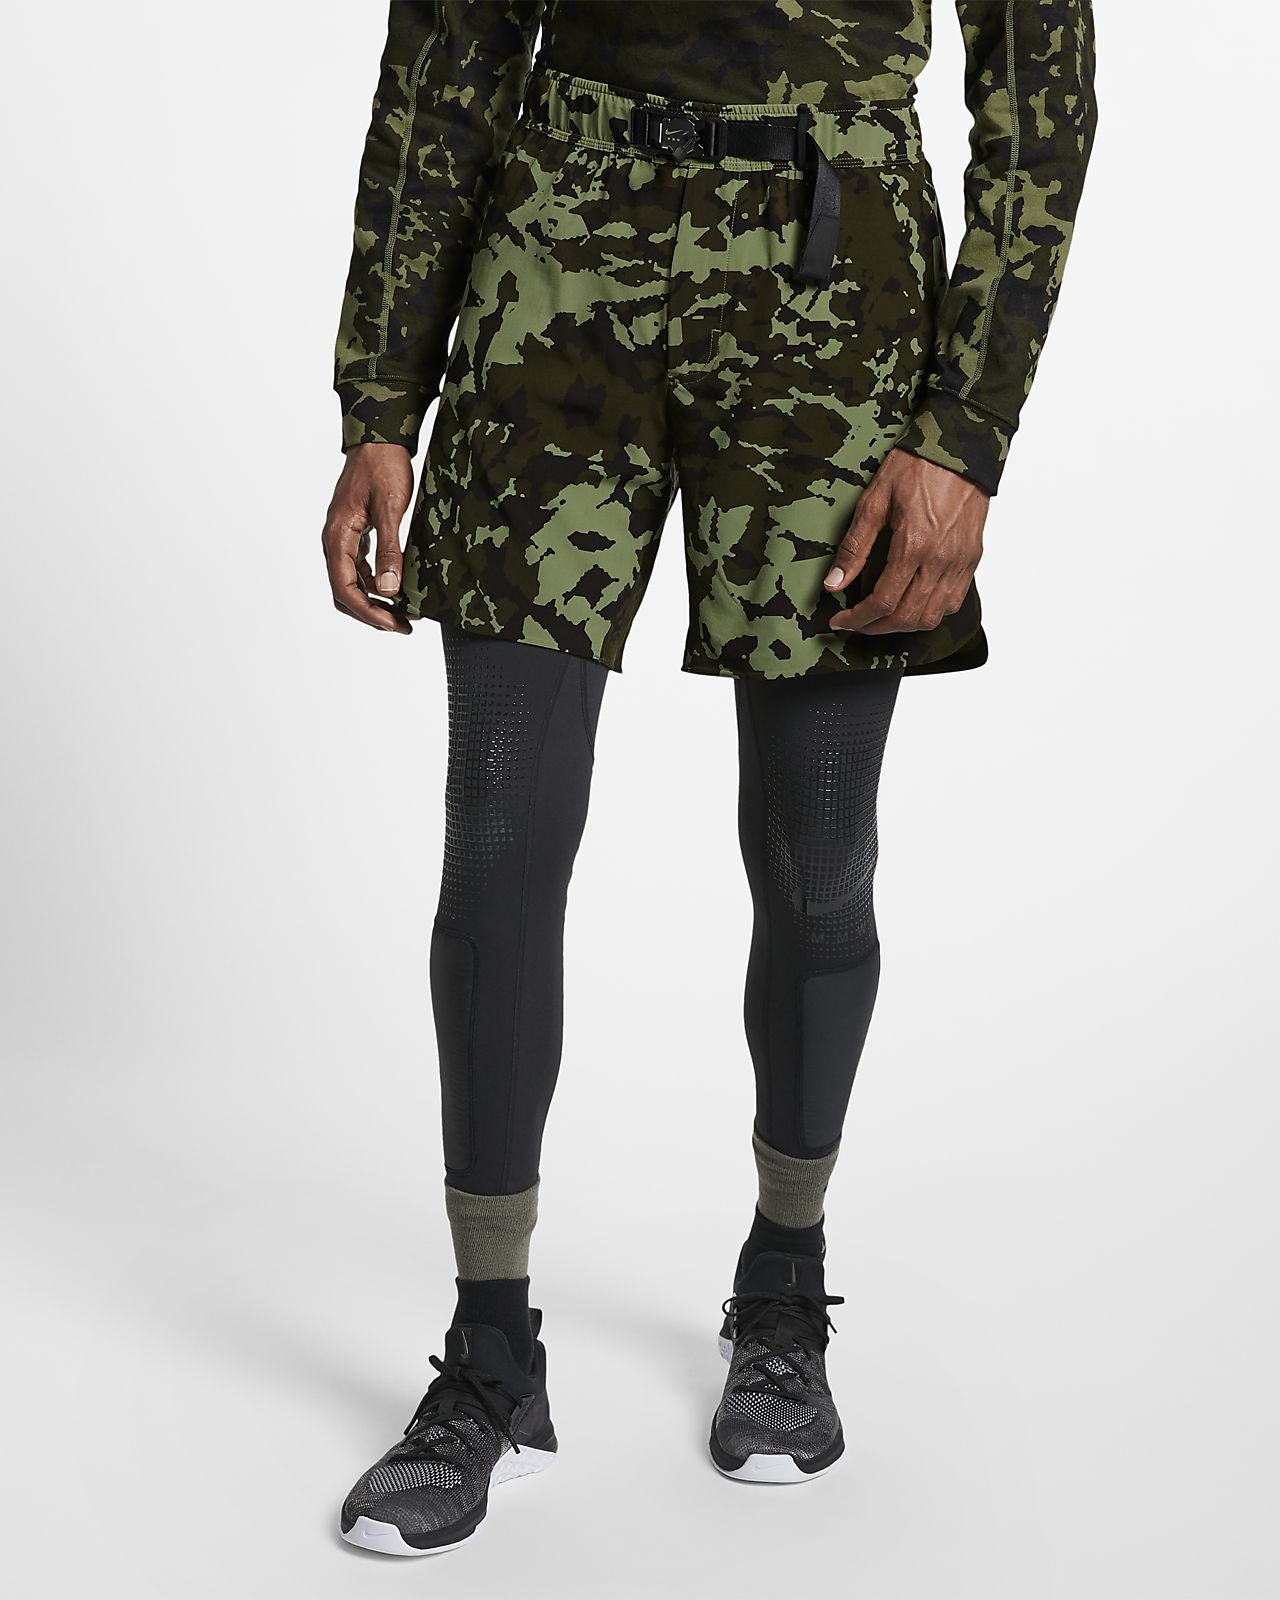 nike army leggings